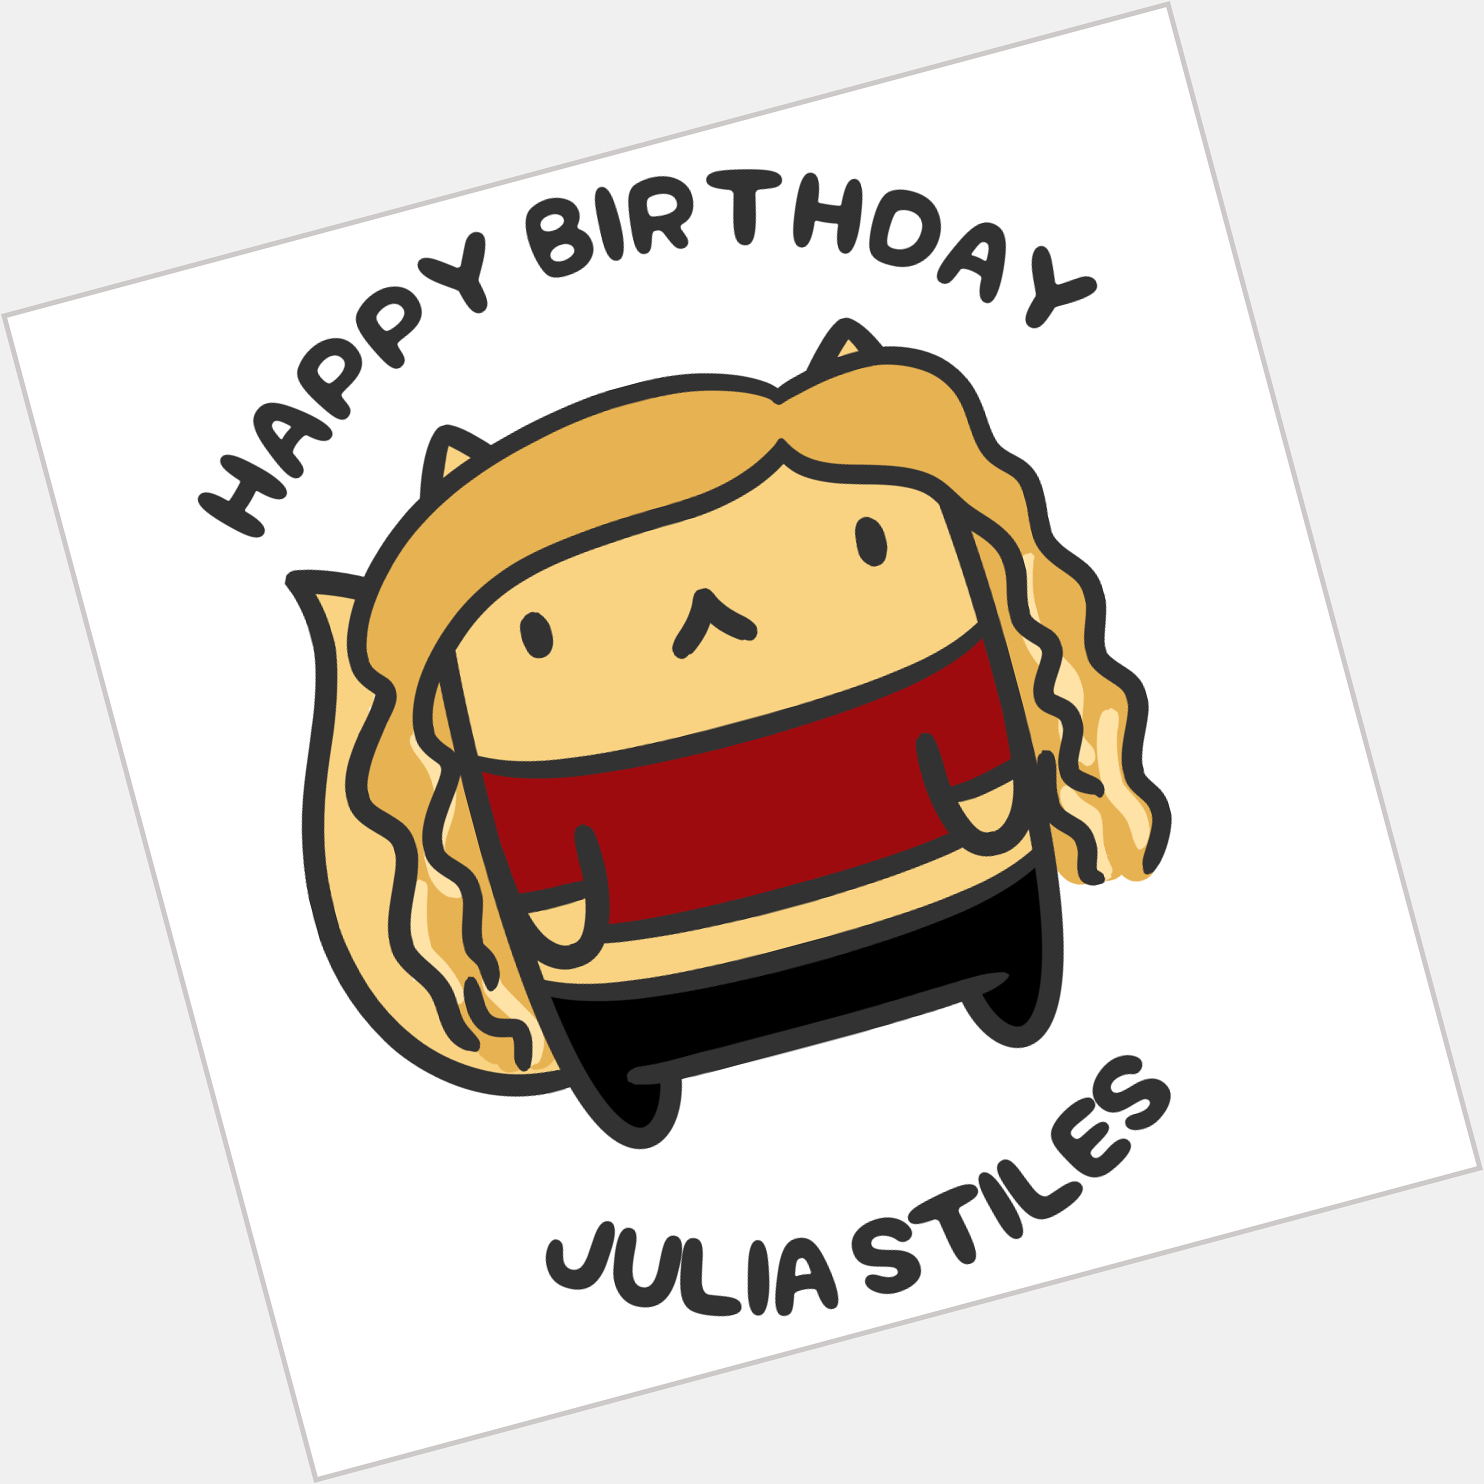 Happy Birthday, Julia Stiles!  